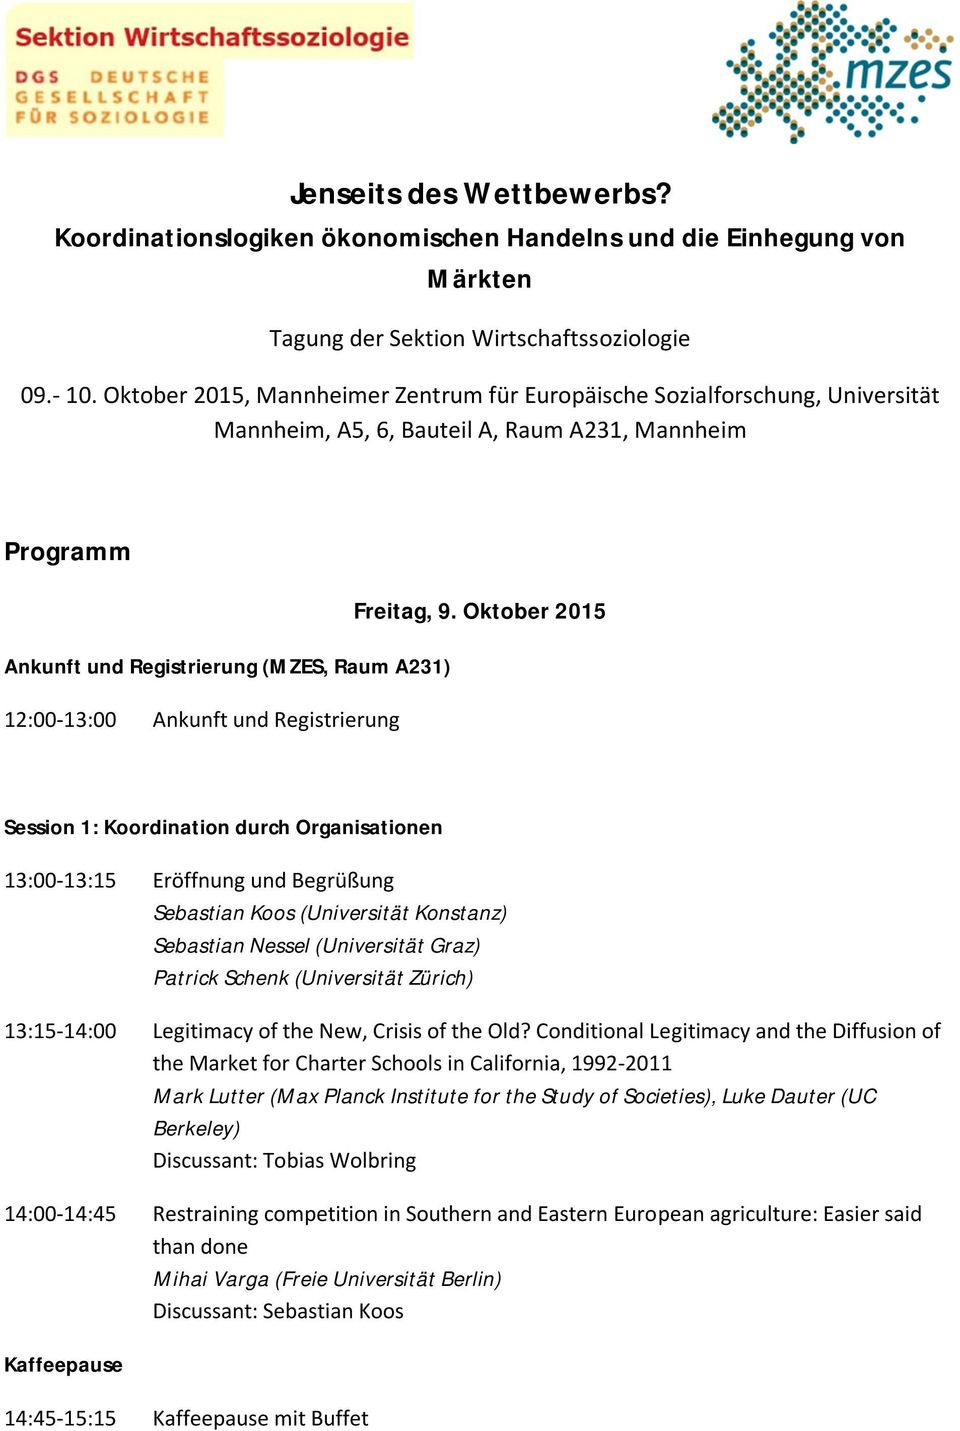 Oktober 2015 Ankunft und Registrierung (MZES, Raum A231) 12:00-13:00 Ankunft und Registrierung Session 1: Koordination durch Organisationen 13:00-13:15 Eröffnung und Begrüßung Sebastian Koos